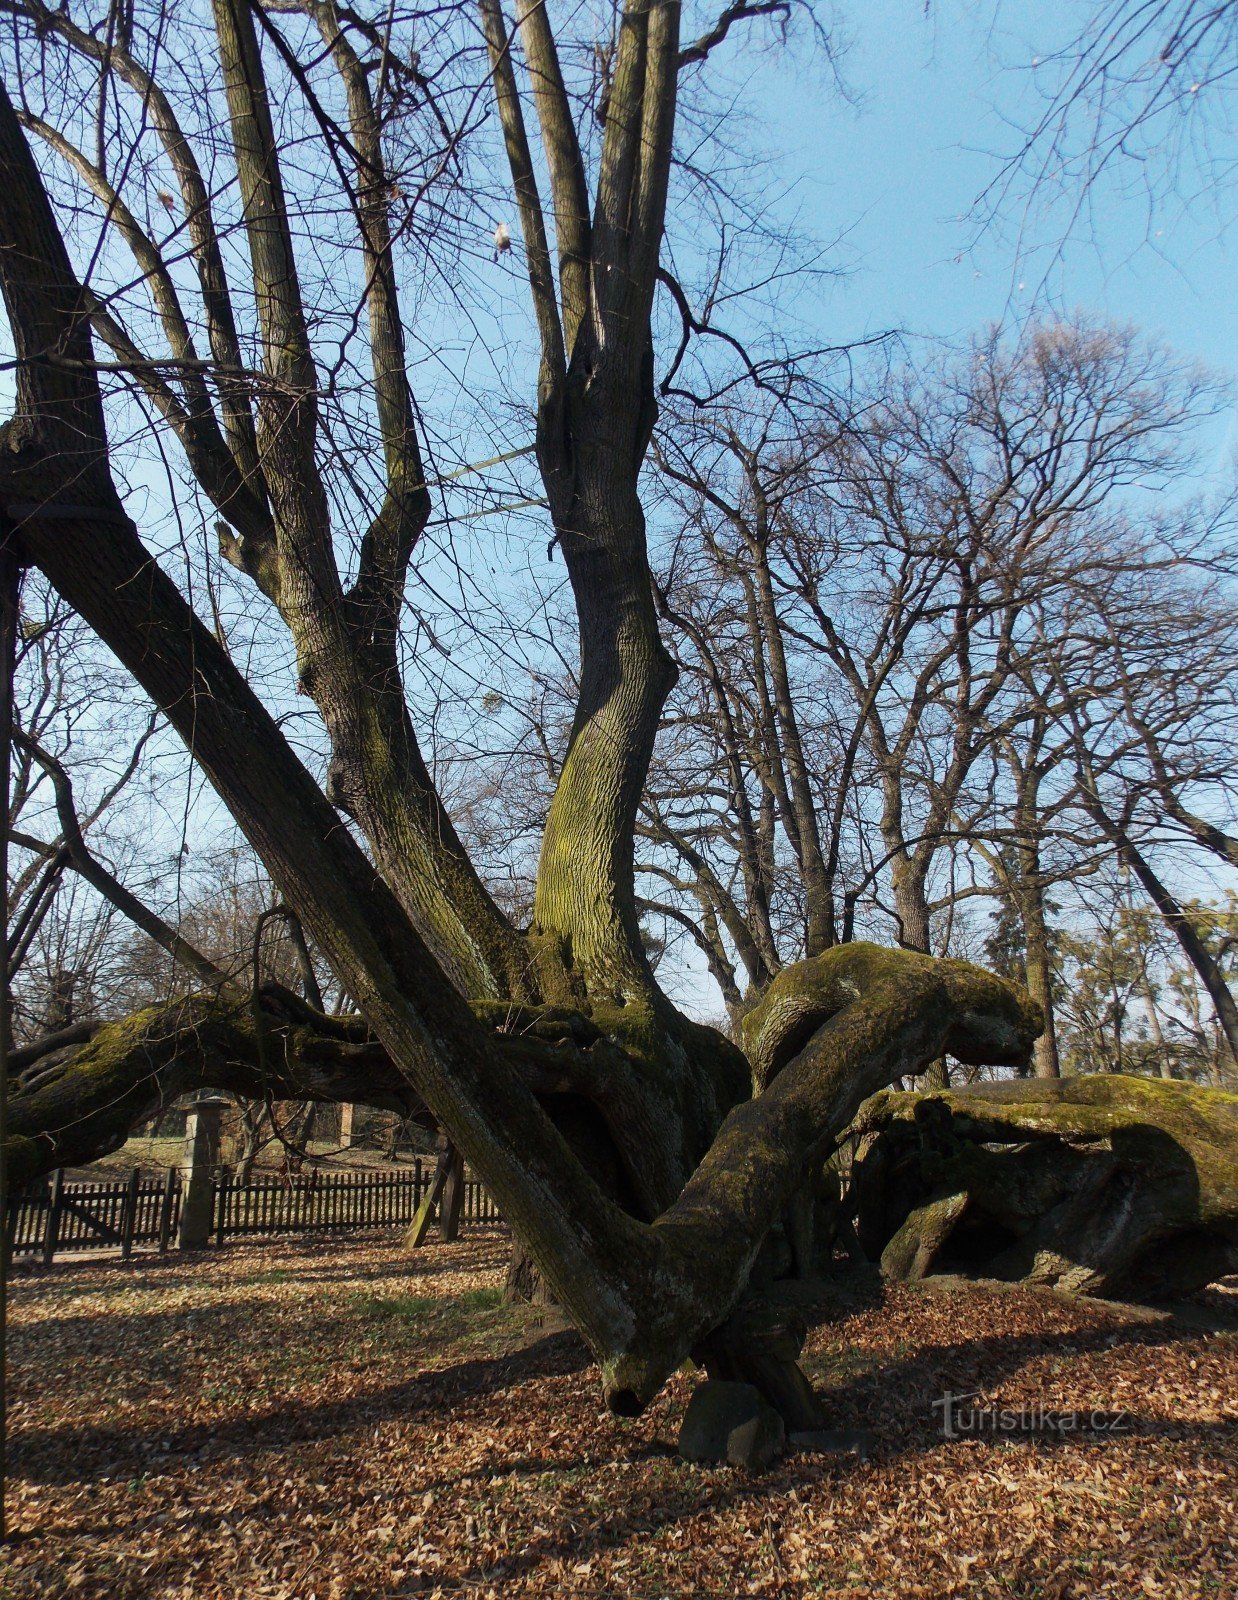 城堡公园 Bzenec 的一个有趣特色，一棵古老的菩提树